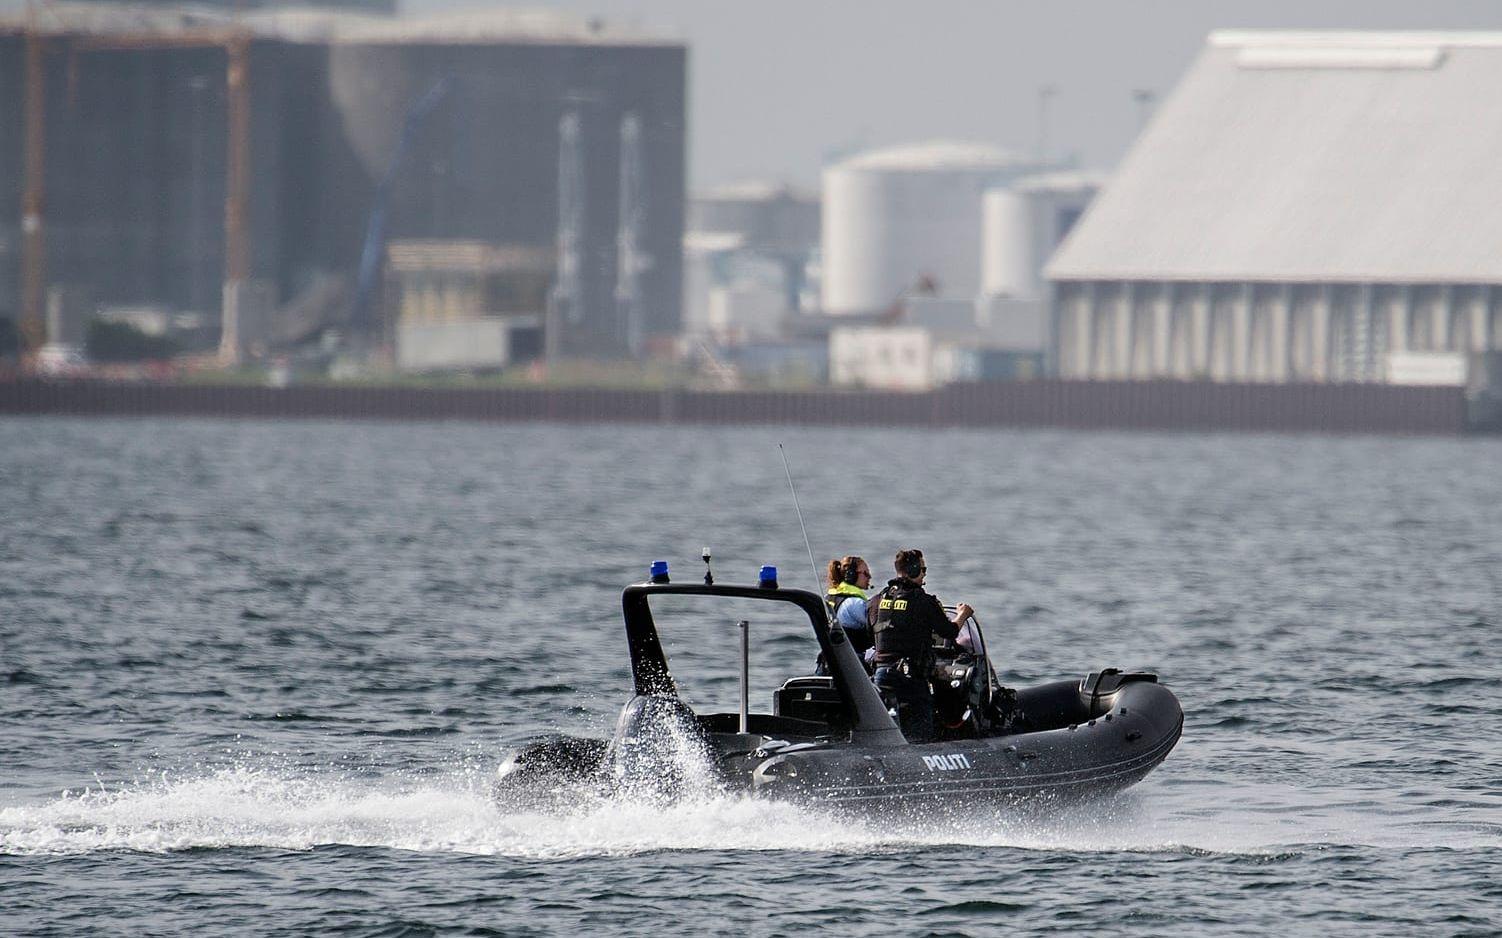 Dansk polis skickade under fredagen ner dykare till ubåten som låg på sju meters djup, men på grund av att den låg ostadigt till kunde de inte undersöka den invändes. Bild: TT
